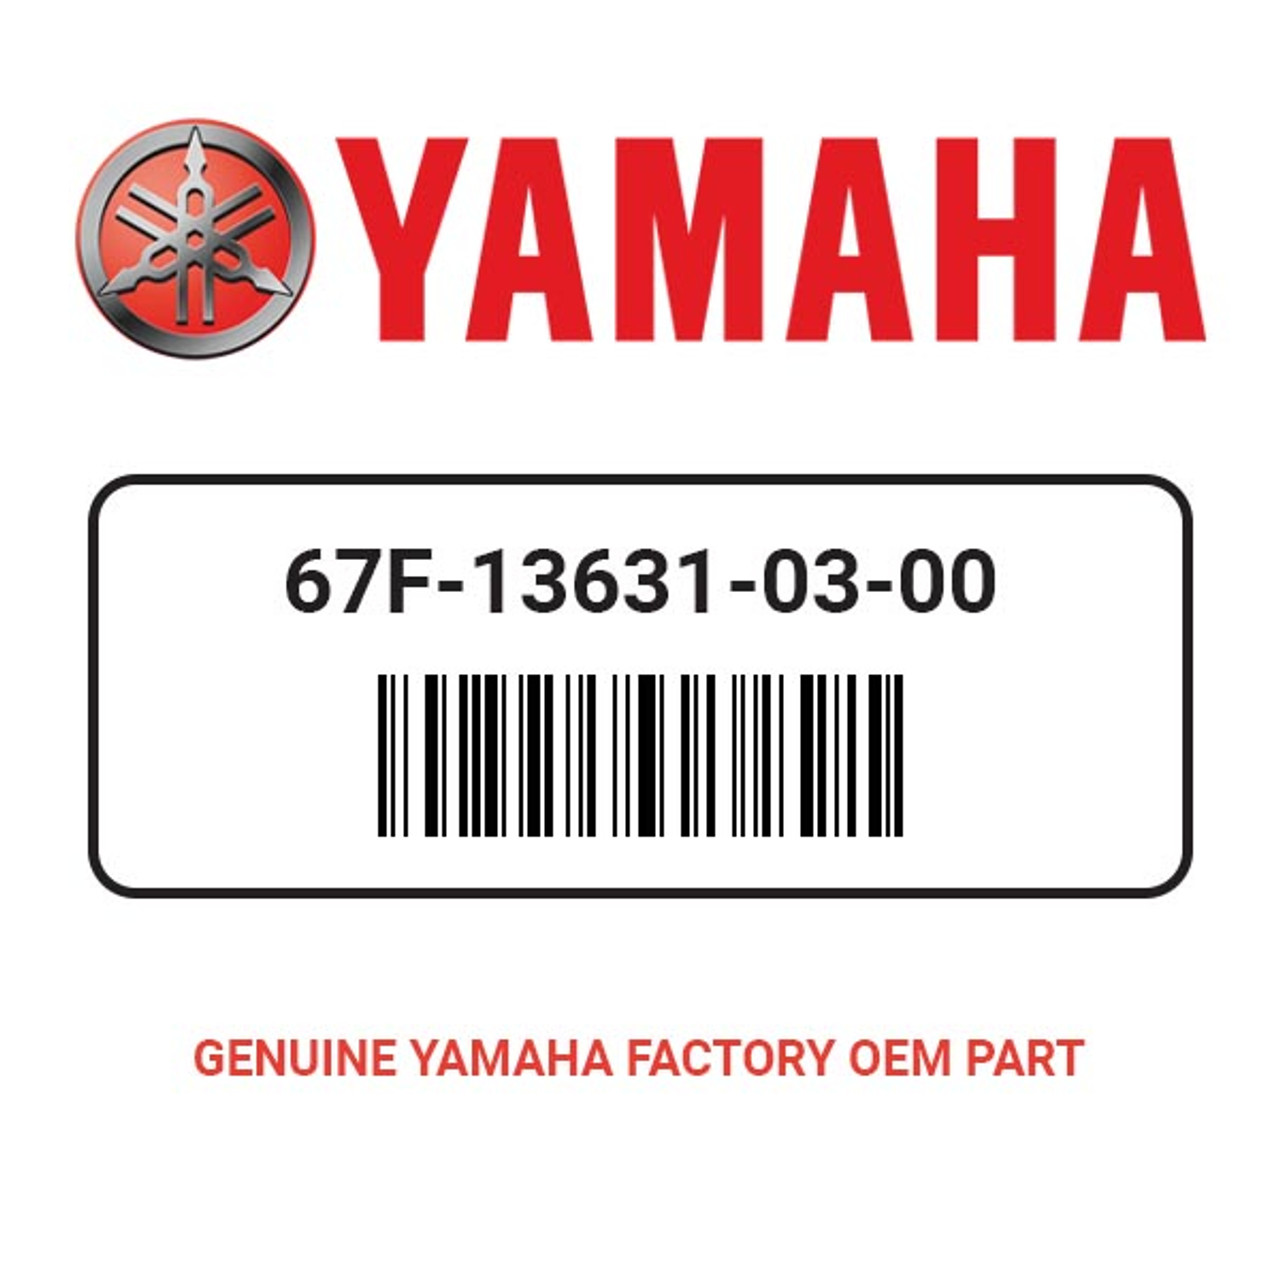 Yamaha 67F-13631-03-00 Oil Seal Wholesale Marine